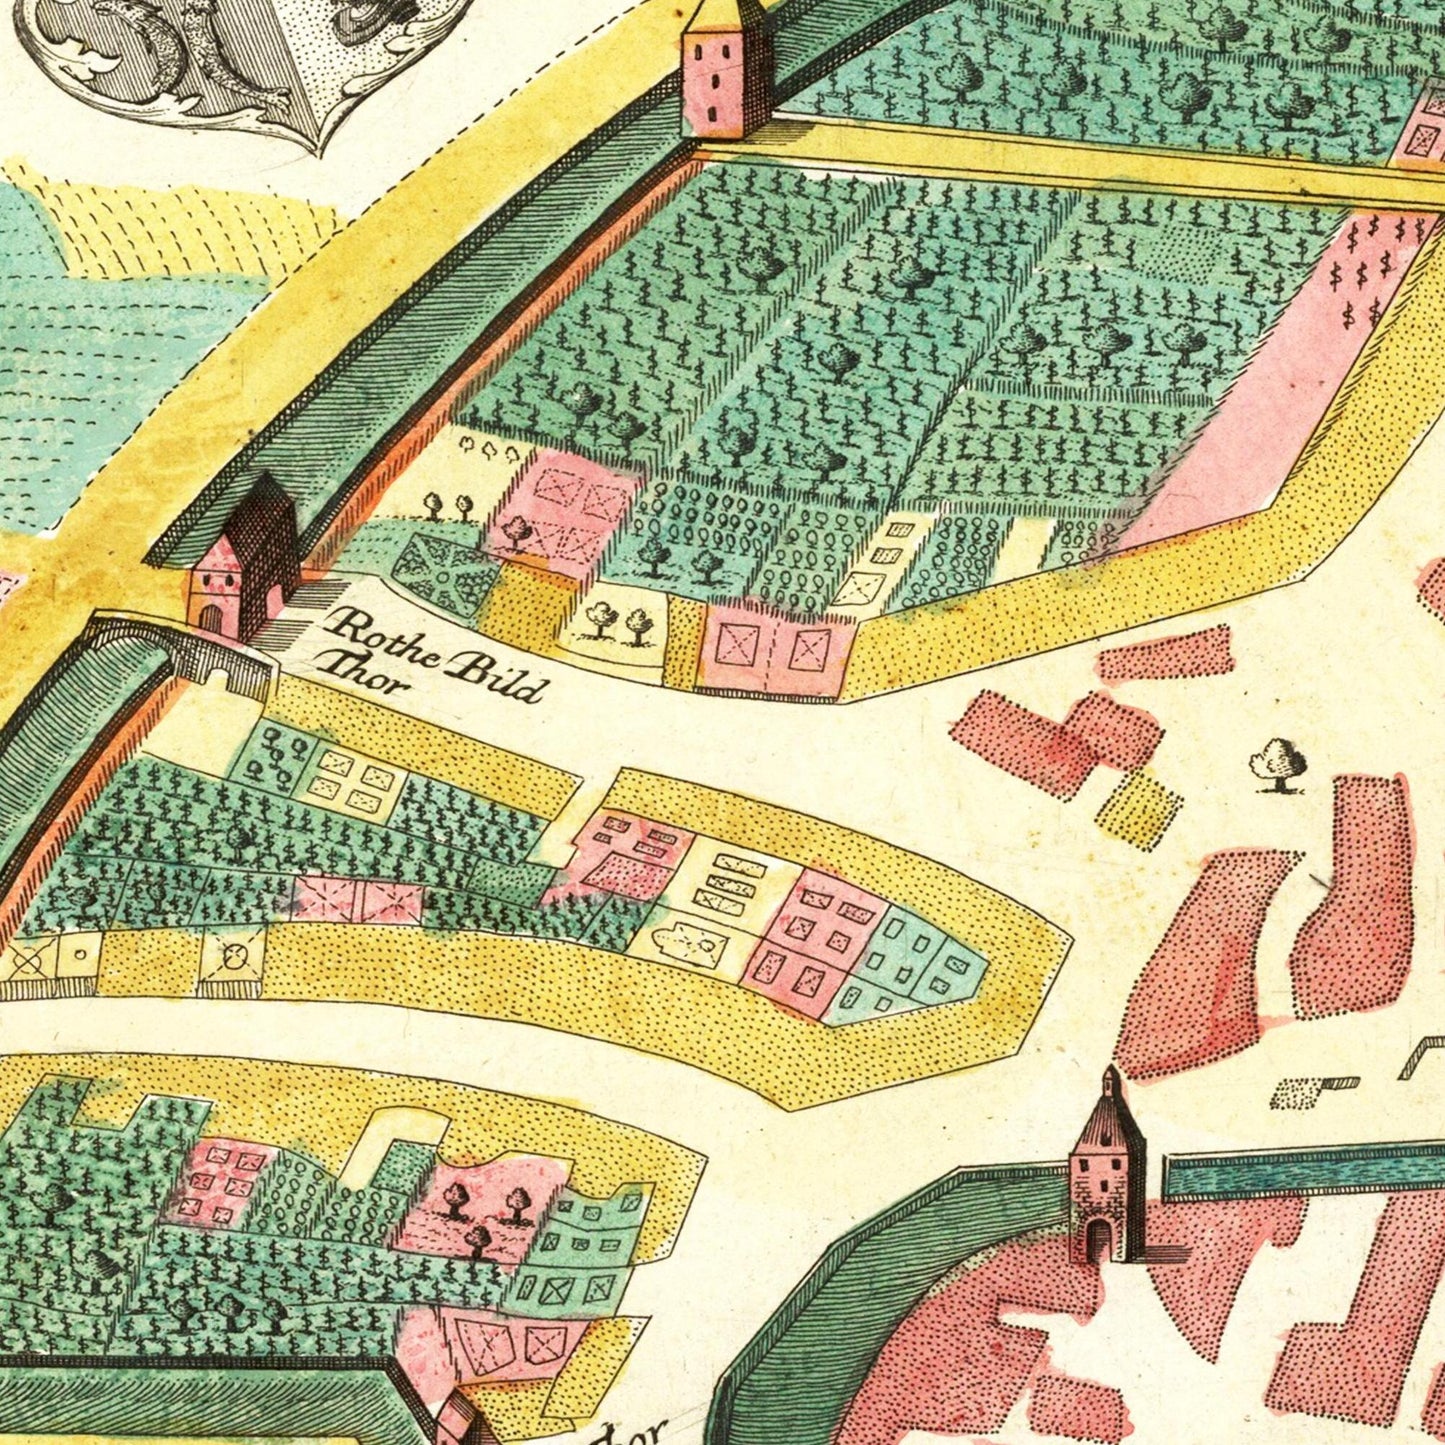 Historische Stadtansicht Stuttgart um 1750